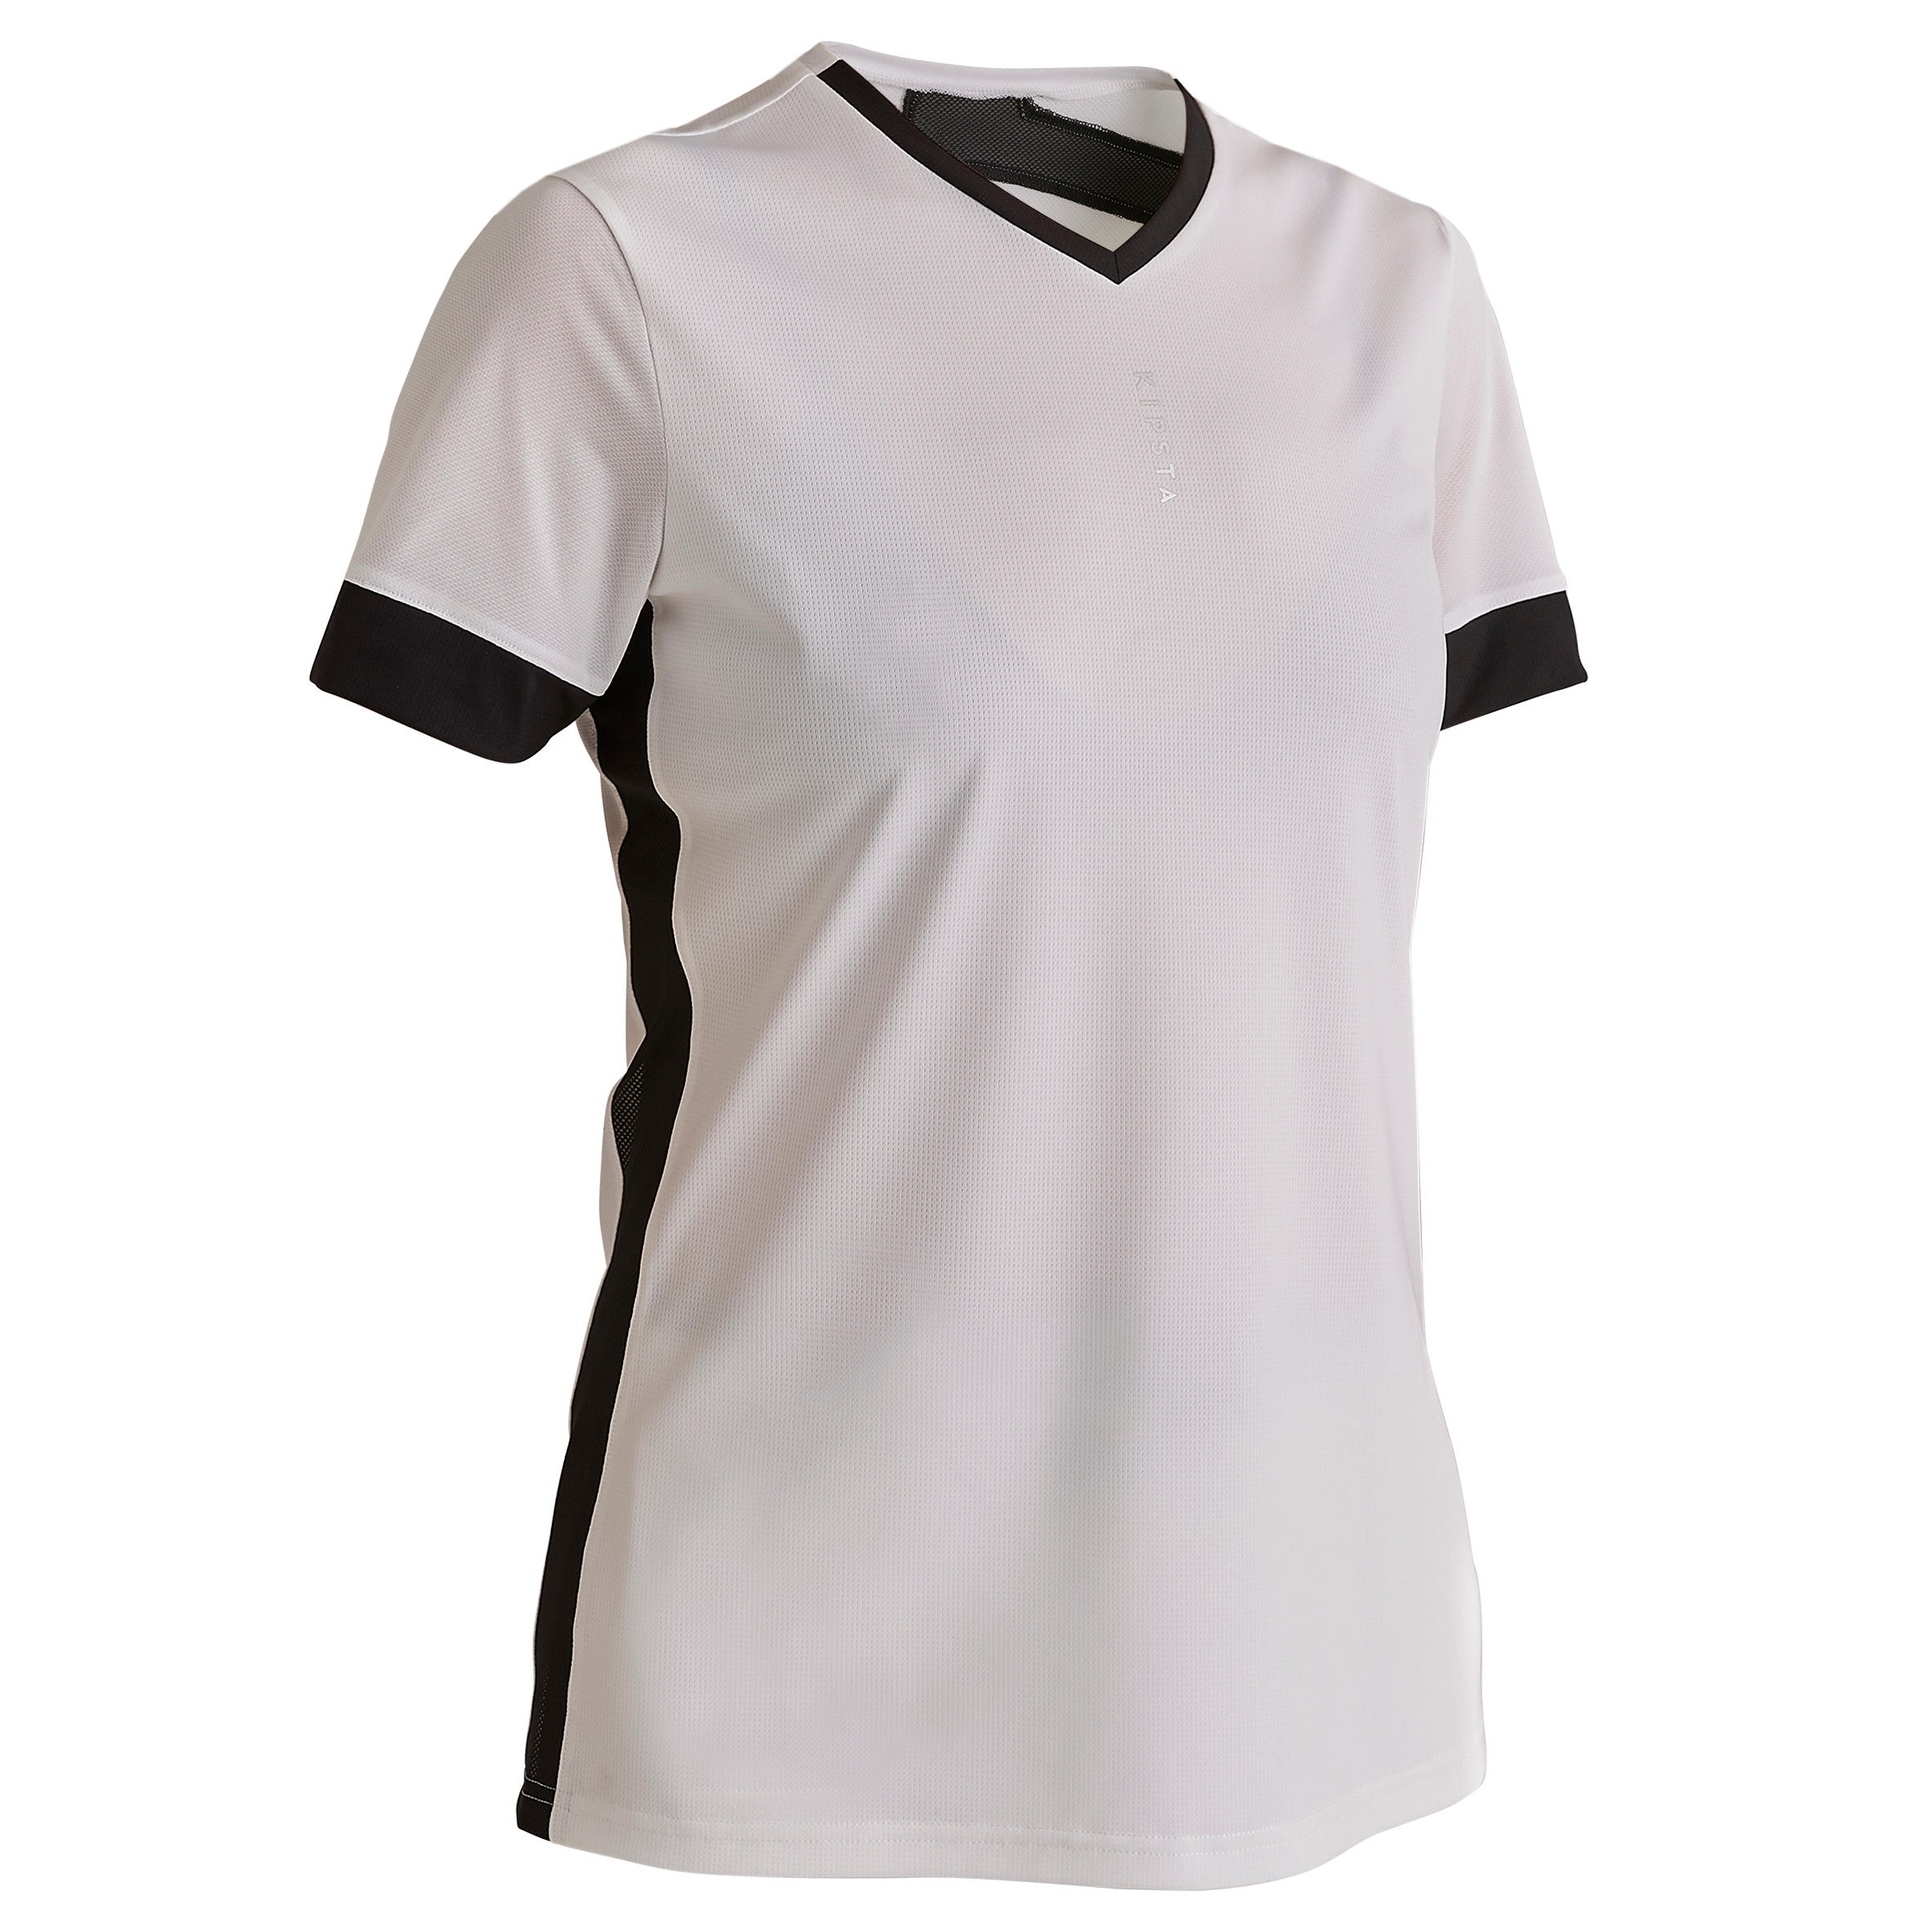 Camiseta de fútbol mujer F500 blanca negra